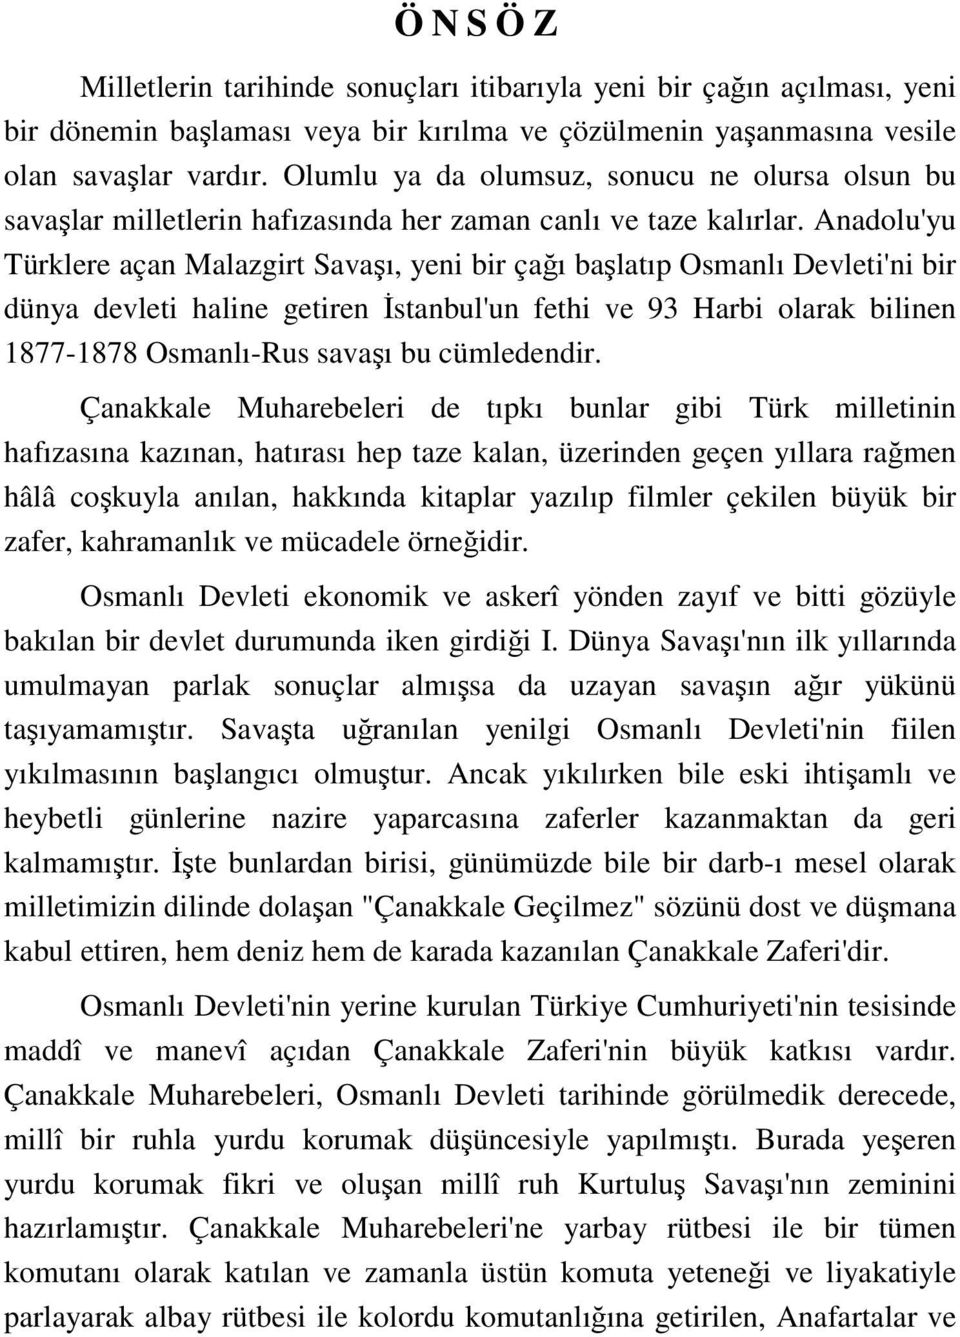 Anadolu'yu Türklere açan Malazgirt Savaşı, yeni bir çağı başlatıp Osmanlı Devleti'ni bir dünya devleti haline getiren Đstanbul'un fethi ve 93 Harbi olarak bilinen 1877-1878 Osmanlı-Rus savaşı bu